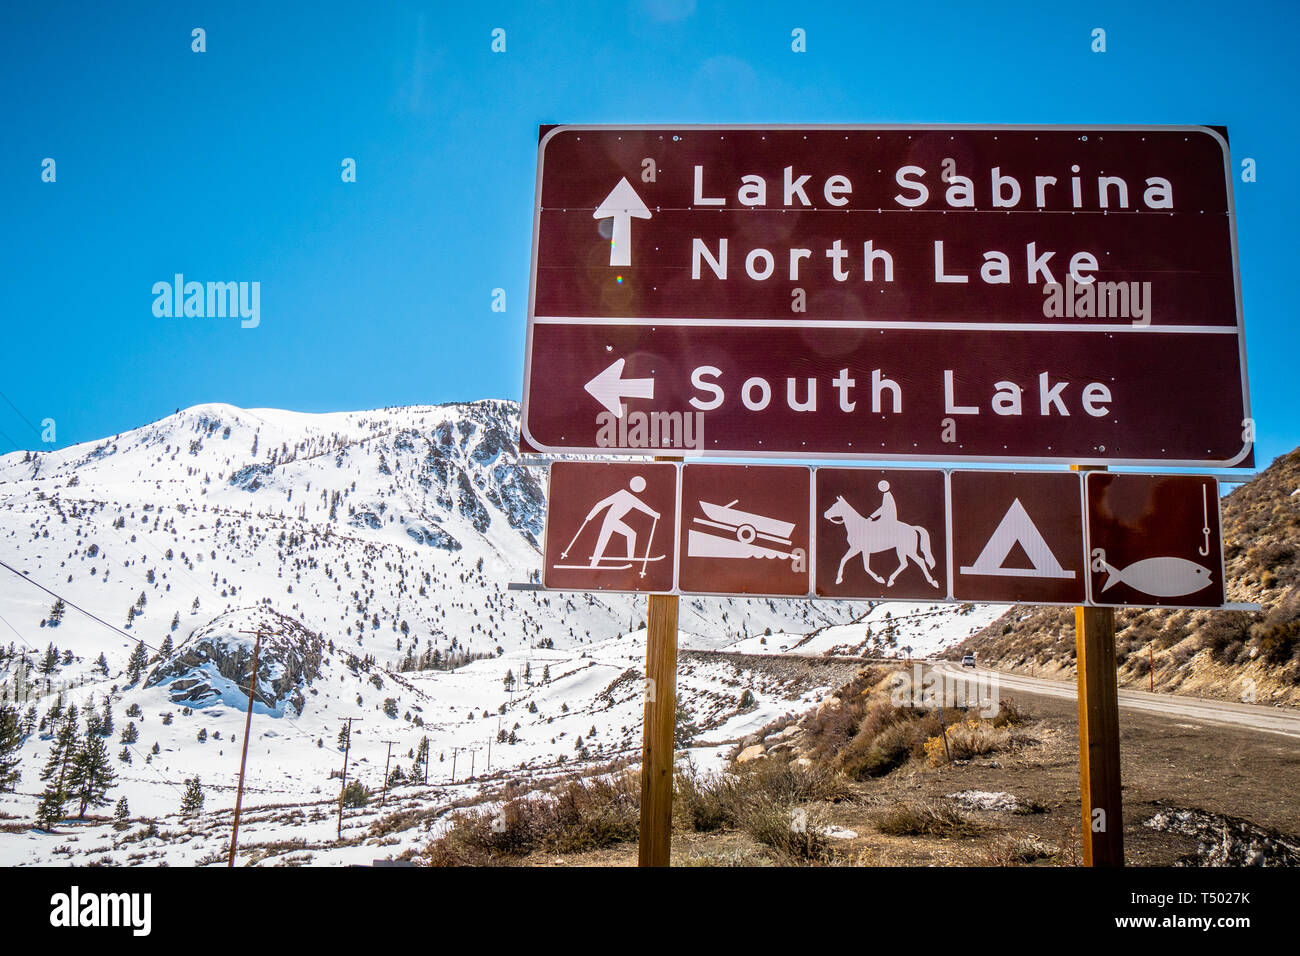 Panneaux de direction au lac Sabrina à Bishop - Évêque, USA - Le 29 mars 2019 Banque D'Images